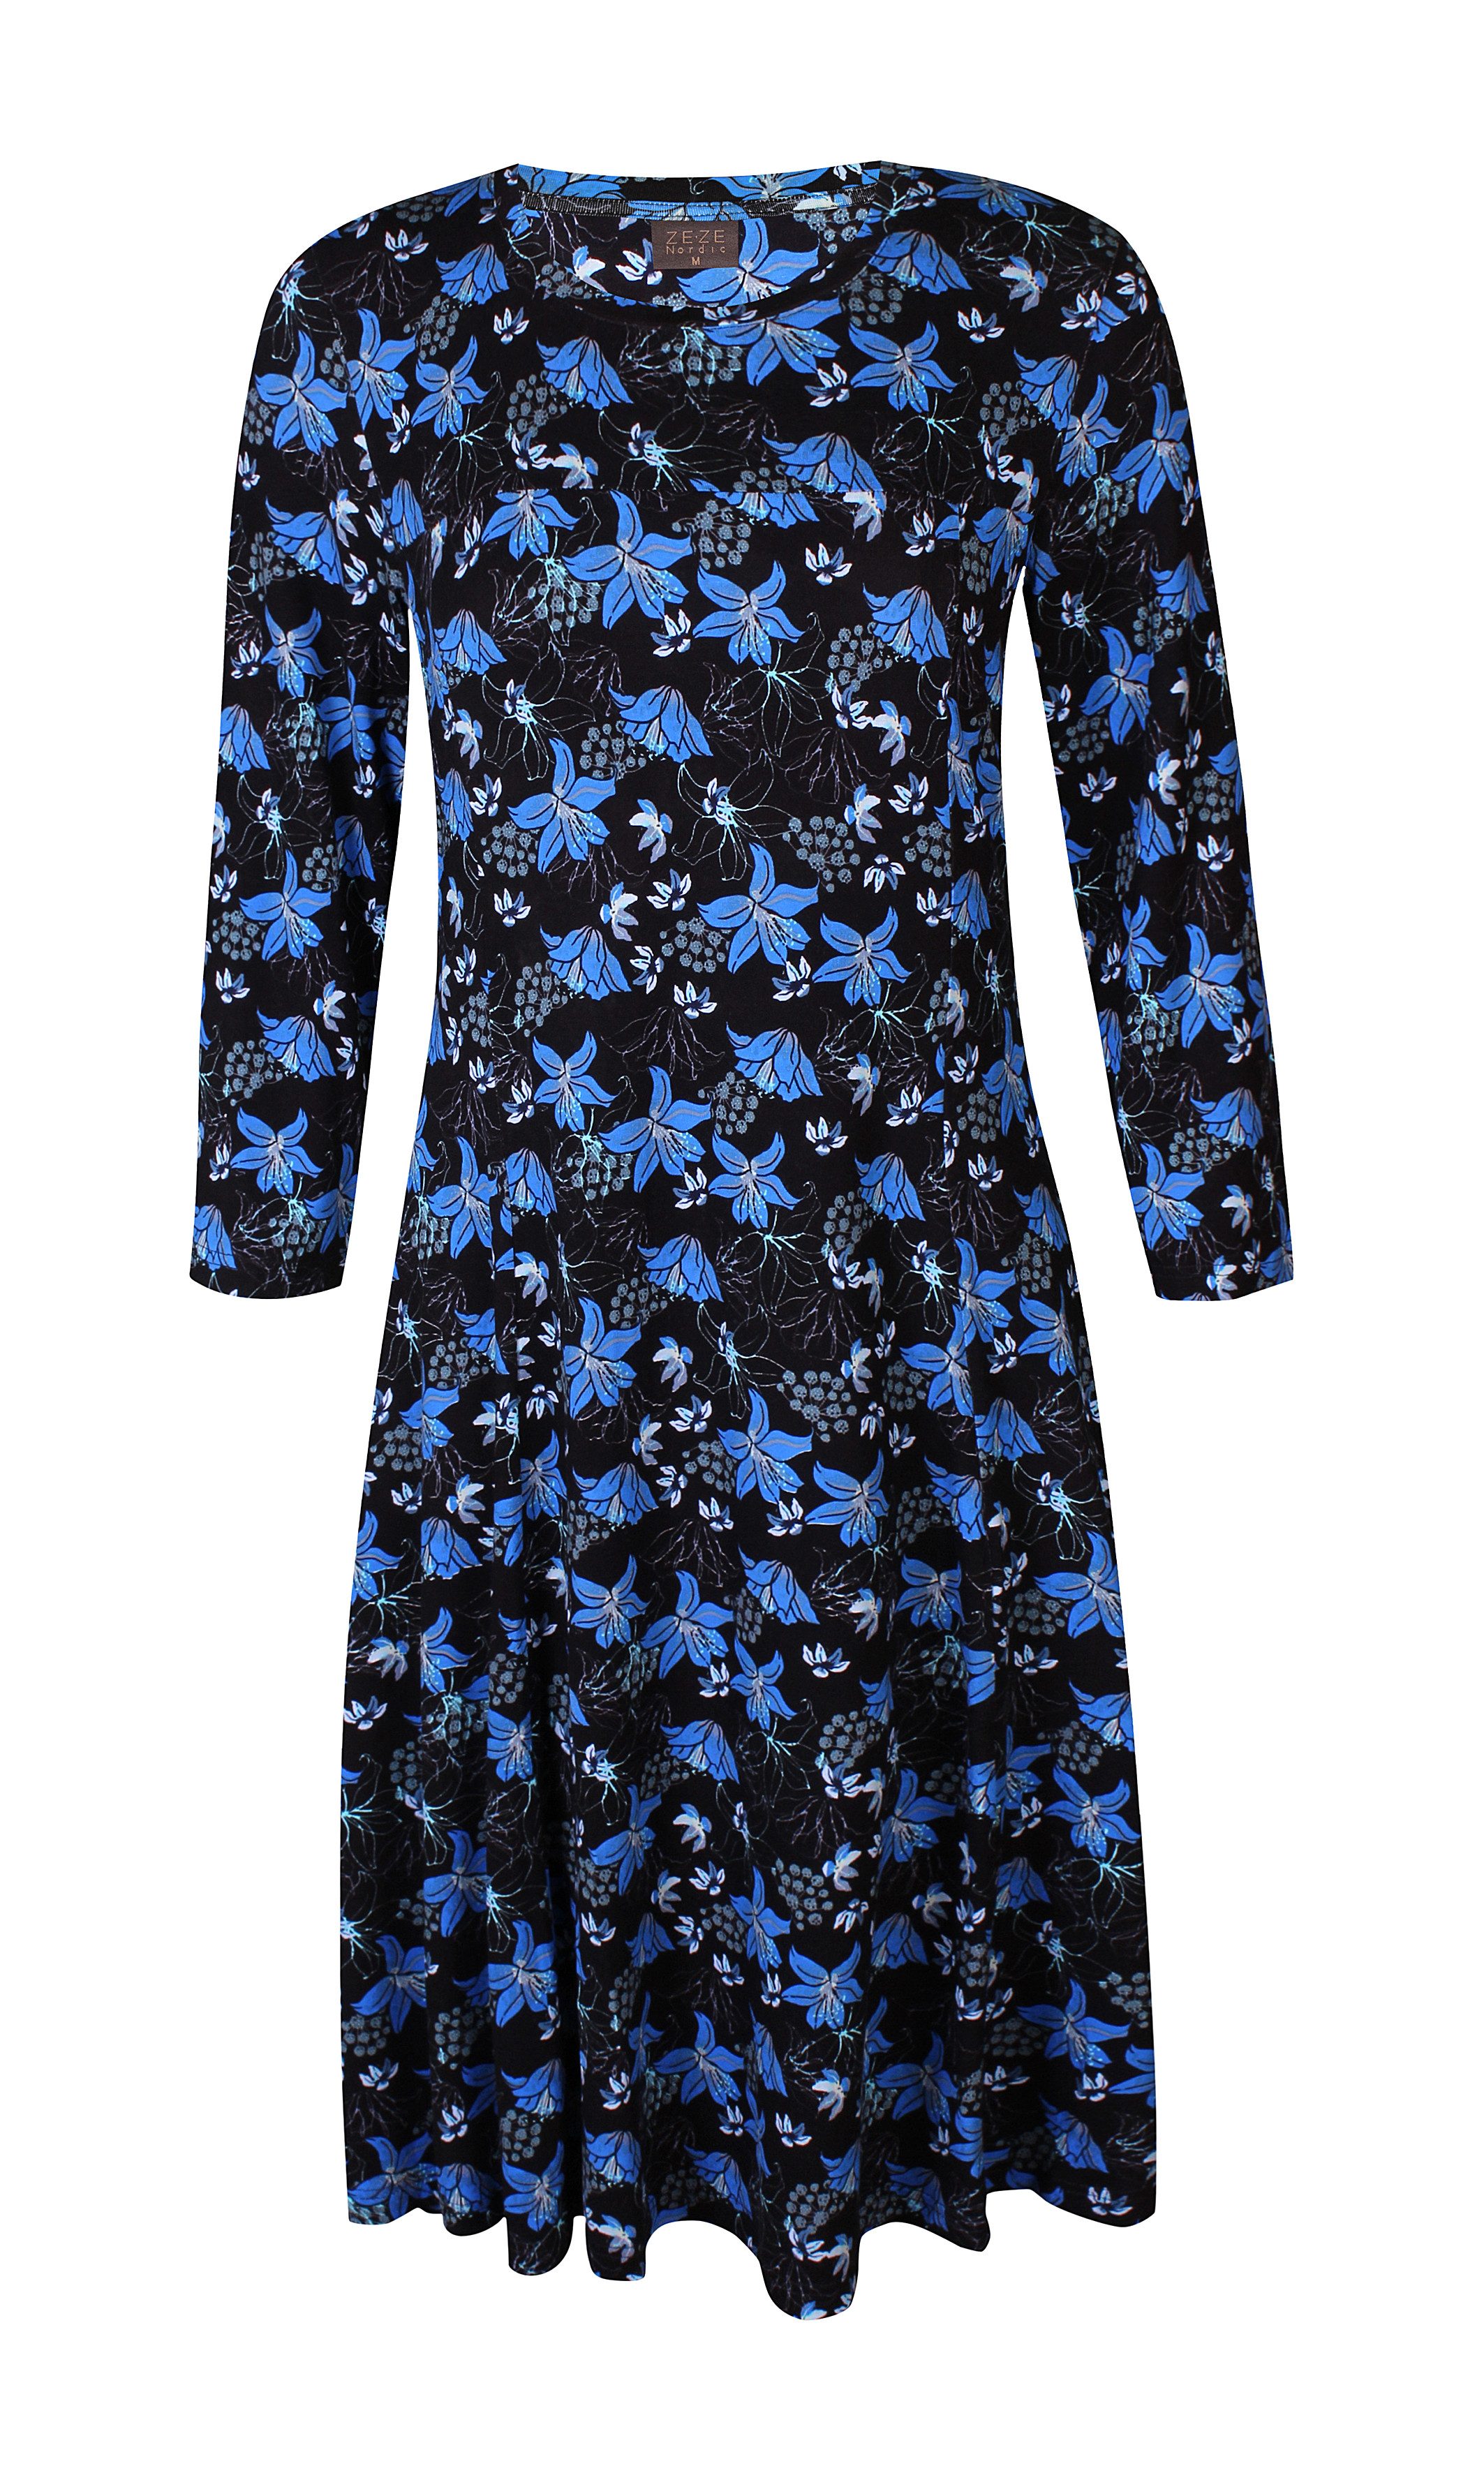 ZE-ZE Nordic Sommerkleid Jersey Kleid mit Blumenprint Lapis blue